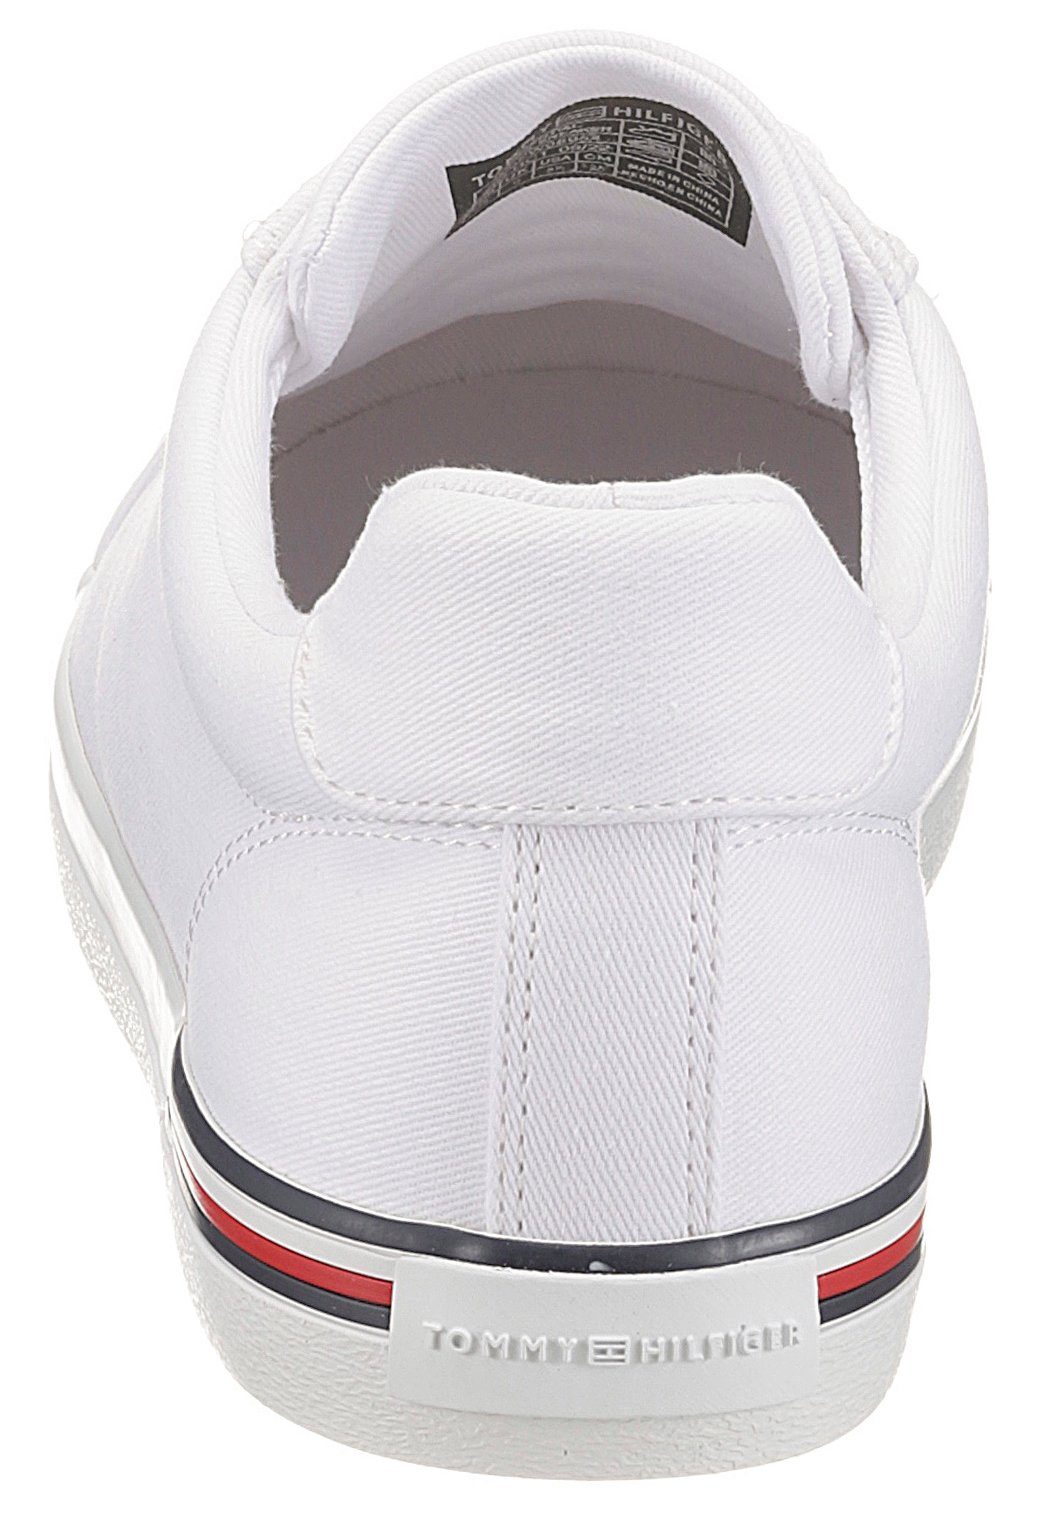 Tommy Hilfiger ESSENTIAL STRIPES SNEAKER mit weiß in der Sneaker Streifen Laufsohle